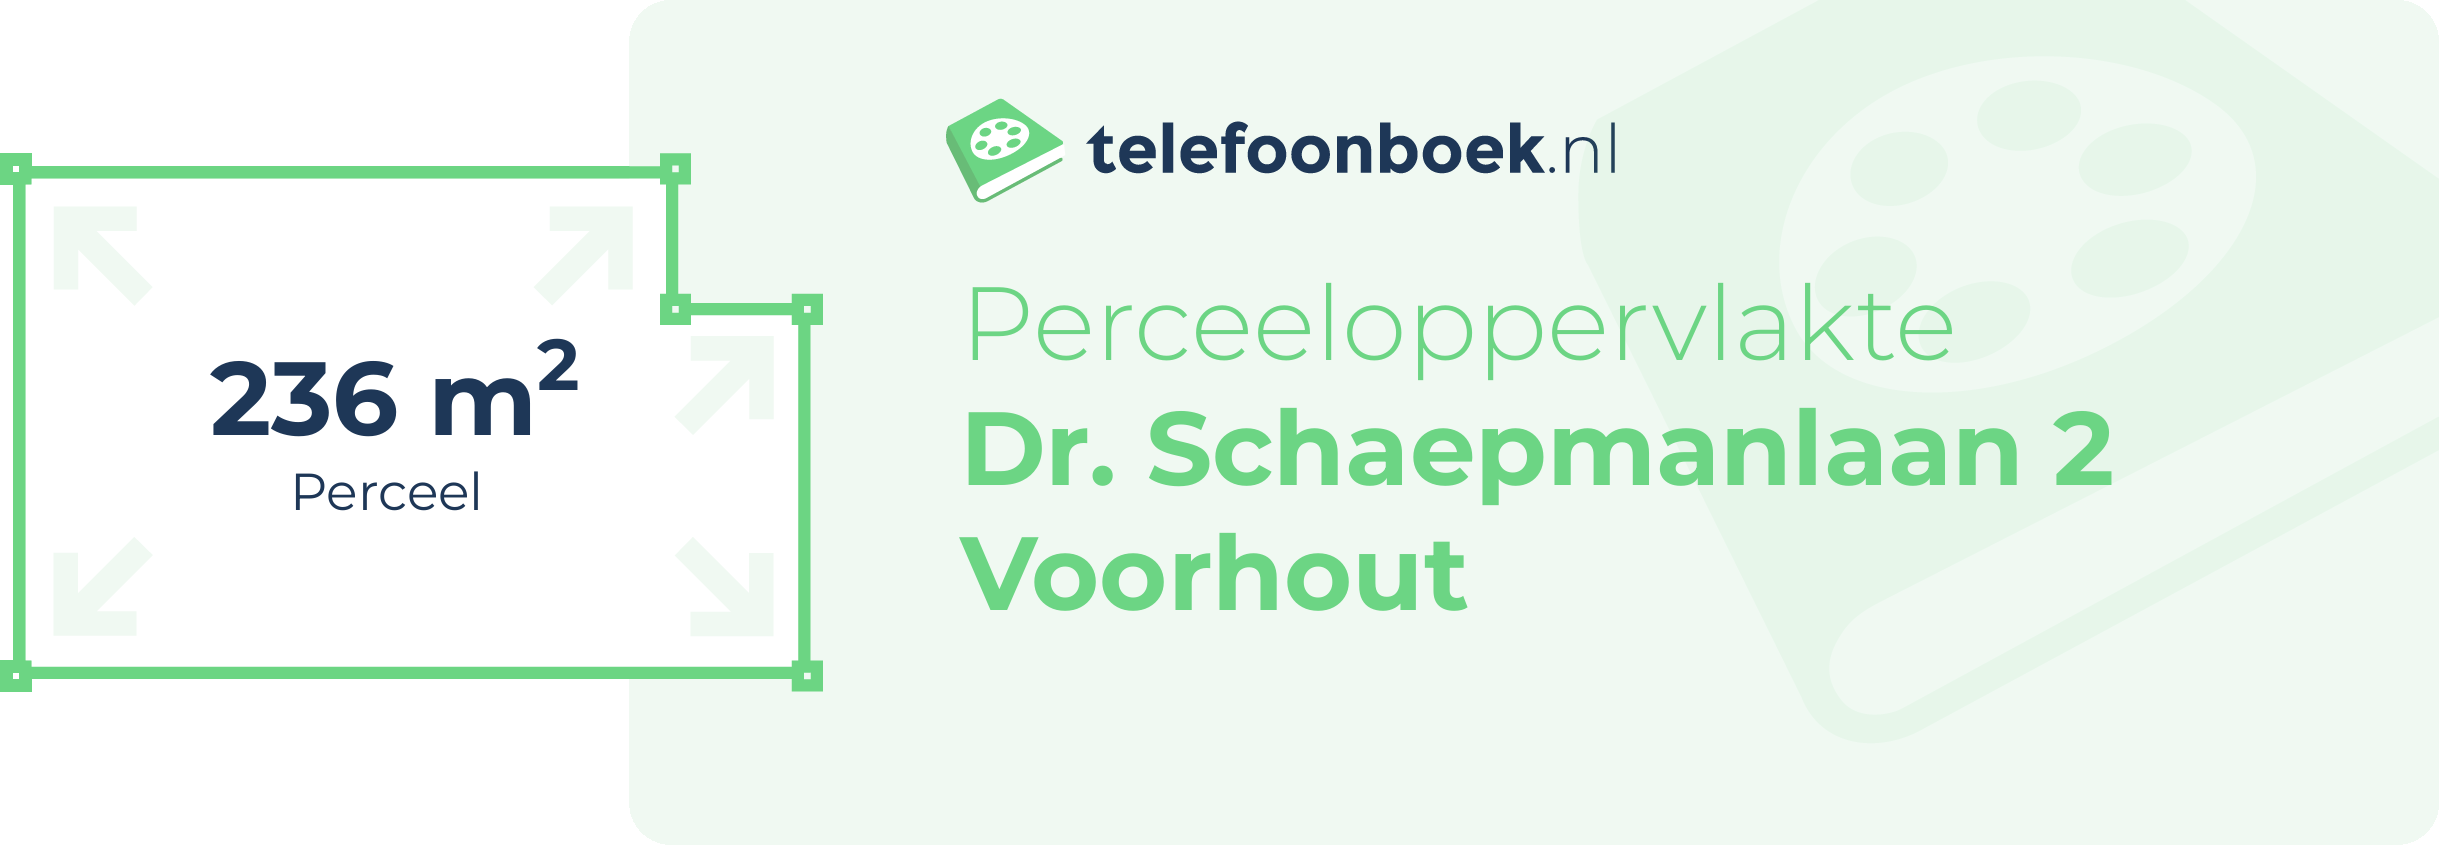 Perceeloppervlakte Dr. Schaepmanlaan 2 Voorhout